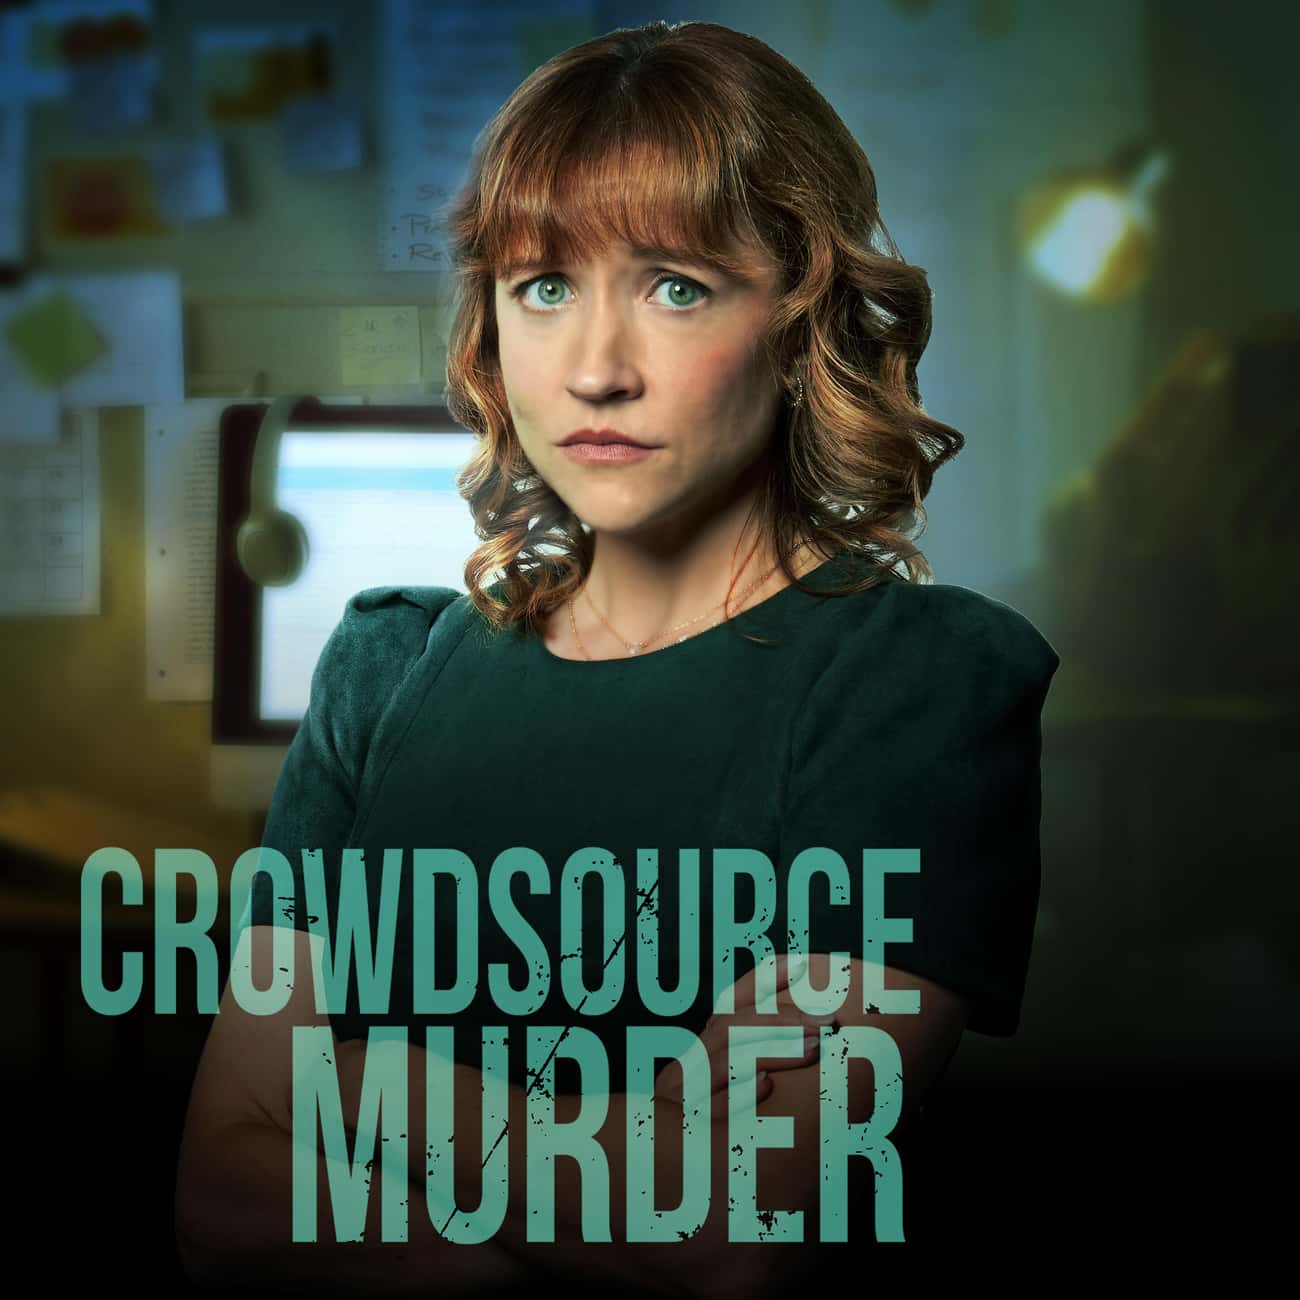 Crowdsource Murder